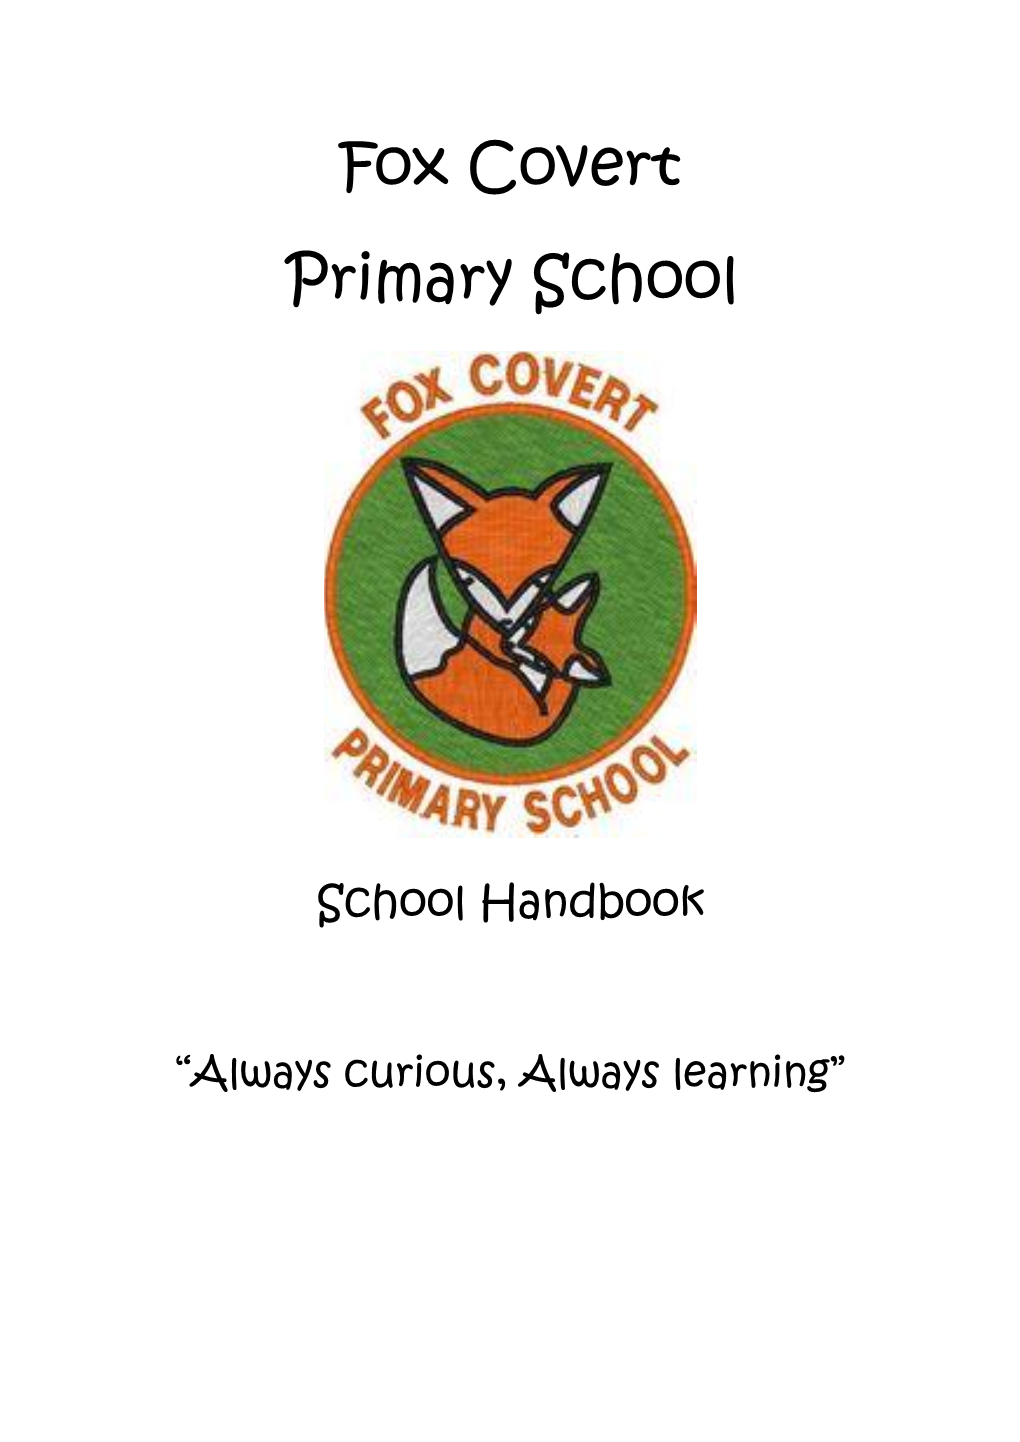 Fox Covert Primary School